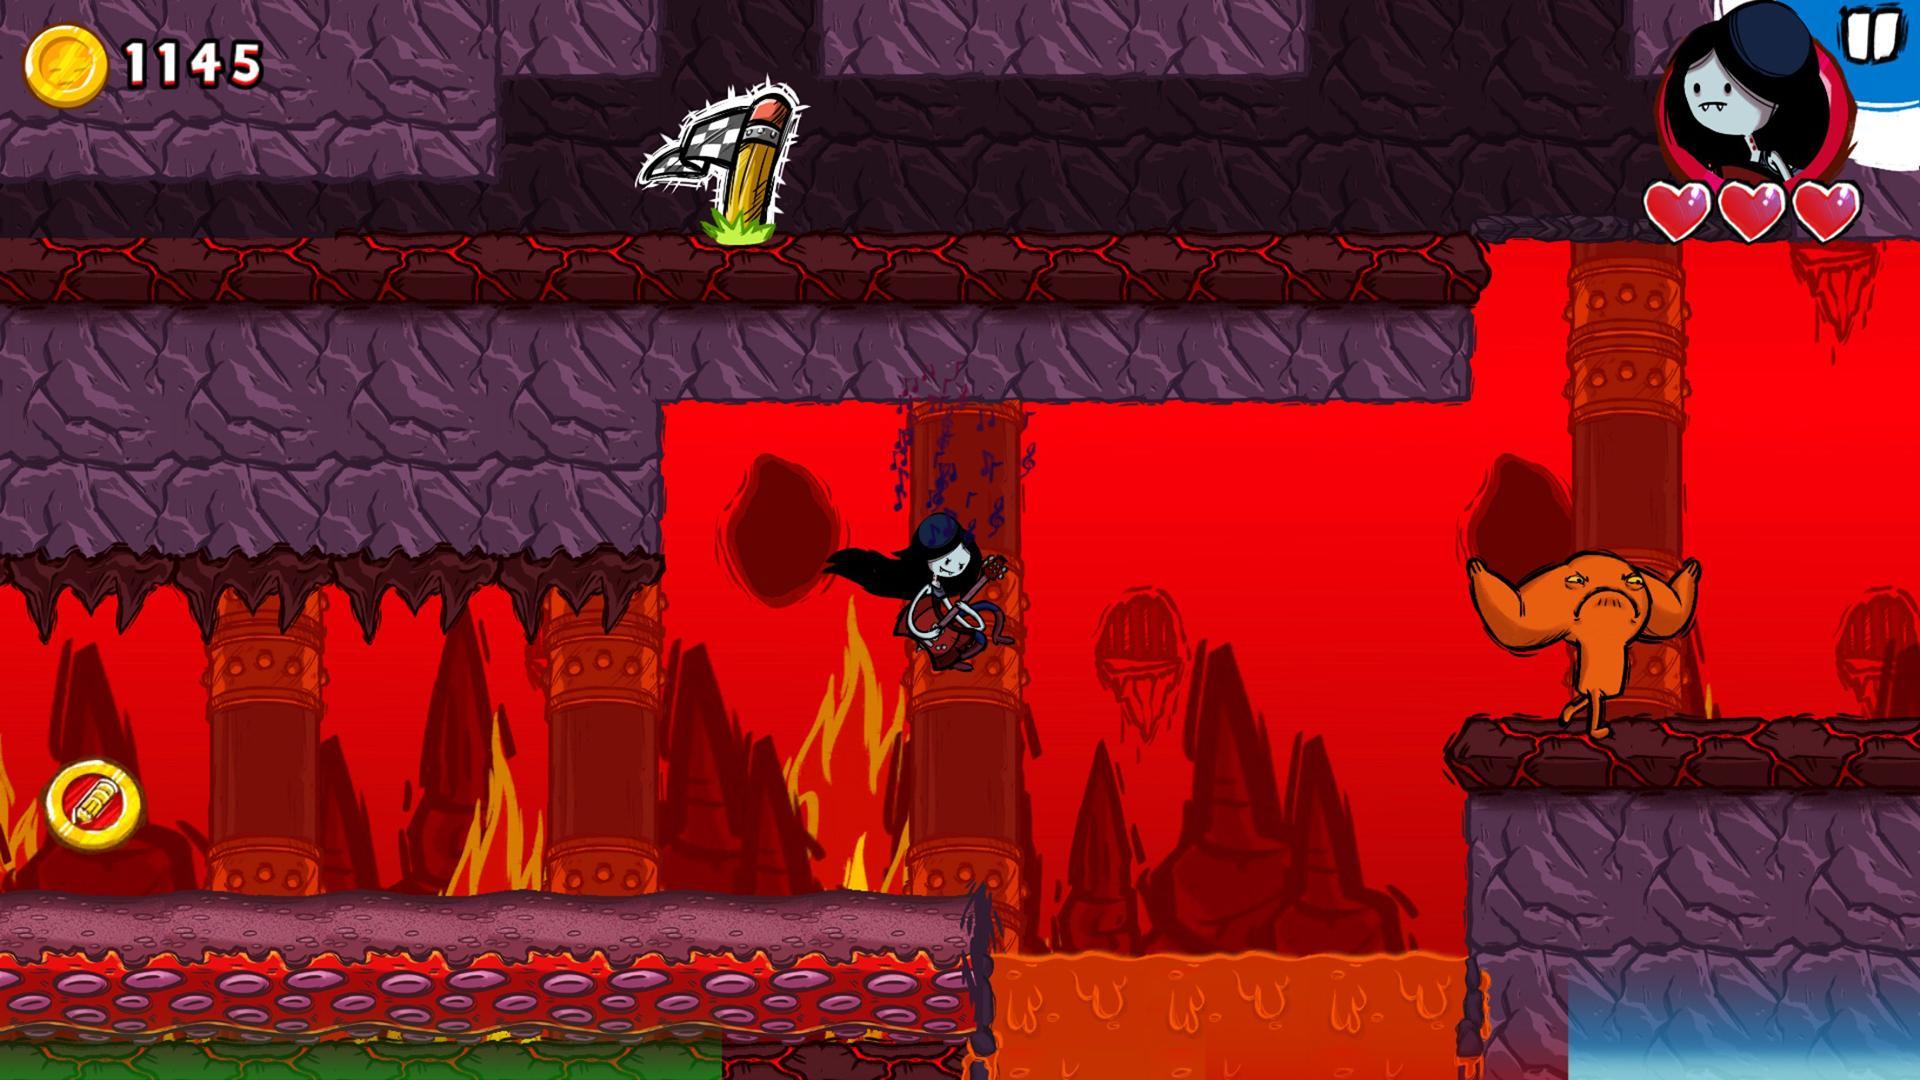 Screenshot 1 of Mago del juego Hora de aventuras 